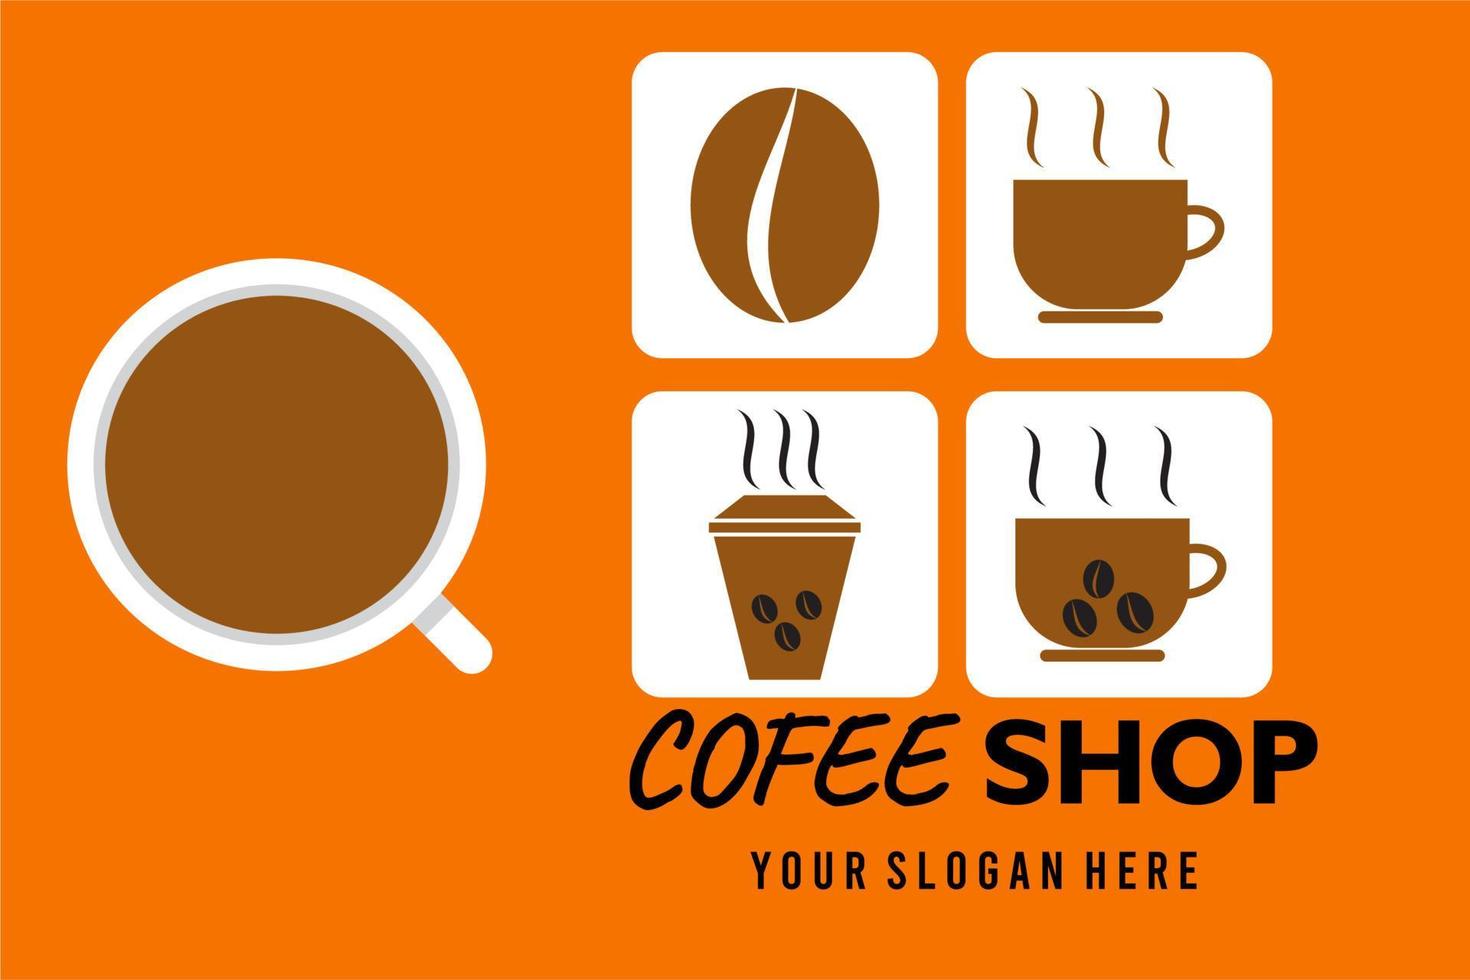 icona della caffetteria.con chicchi di caffè e icone della tazza, per poster, banner, loghi di caffetteria e così via vettore